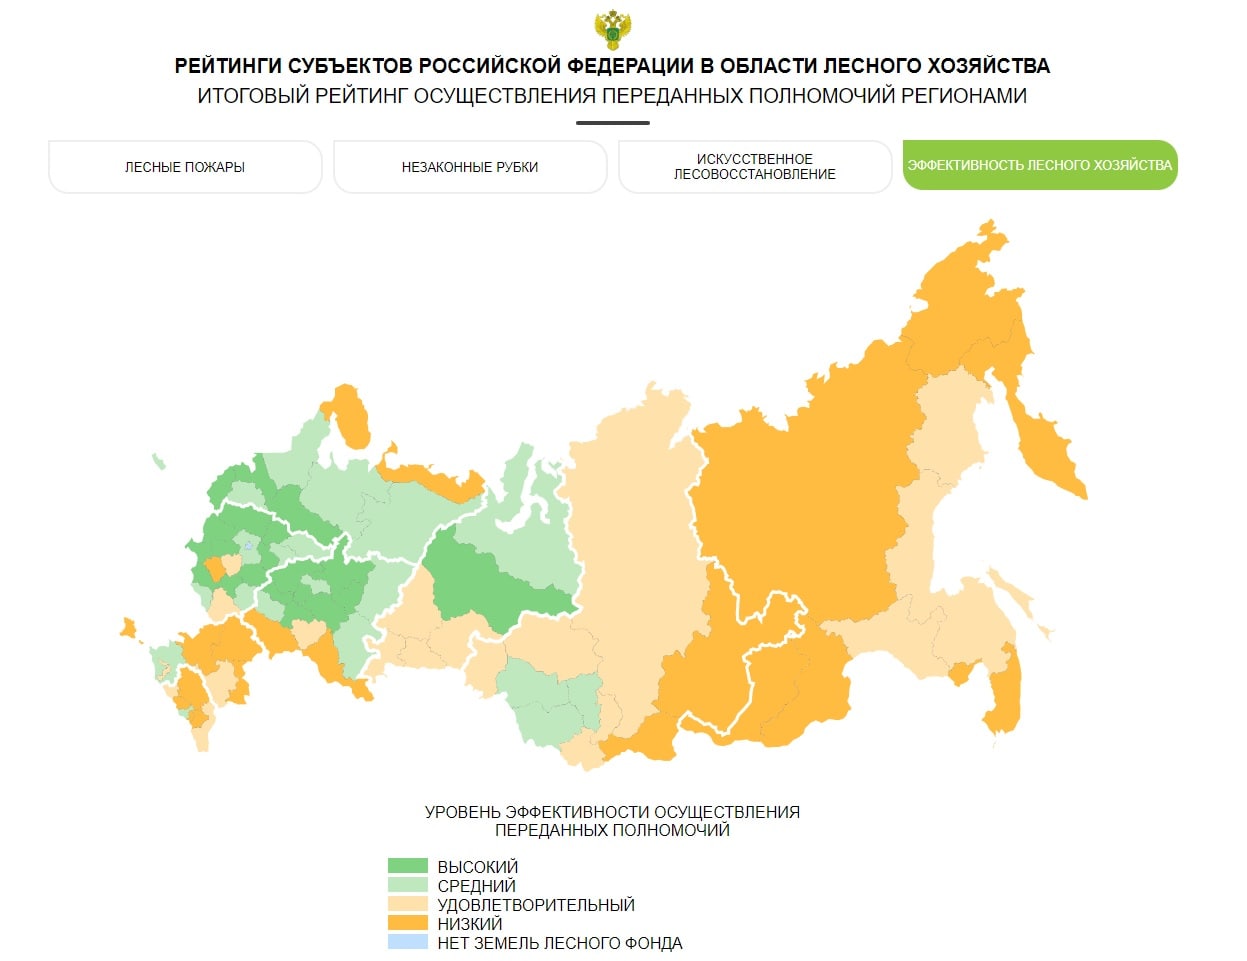 Брянская область показала высокий уровень эффективности ведения лесного хозяйства